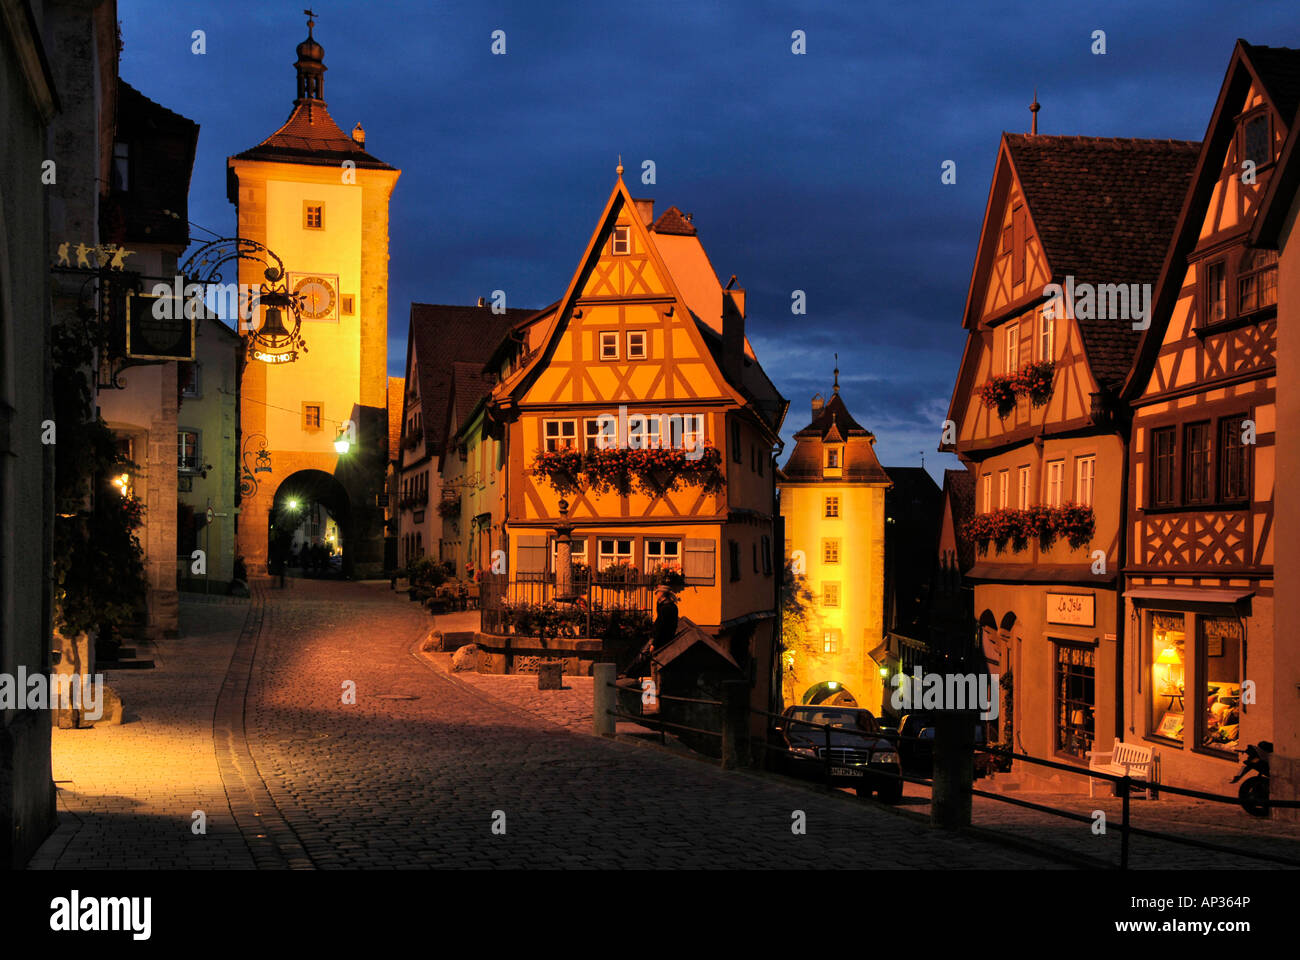 Vue sur la vieille ville médiévale avec tour et maisons à colombages, Siebersturm, Ploenplein, Rothenburg ob der Tauber, Franconia, Banque D'Images